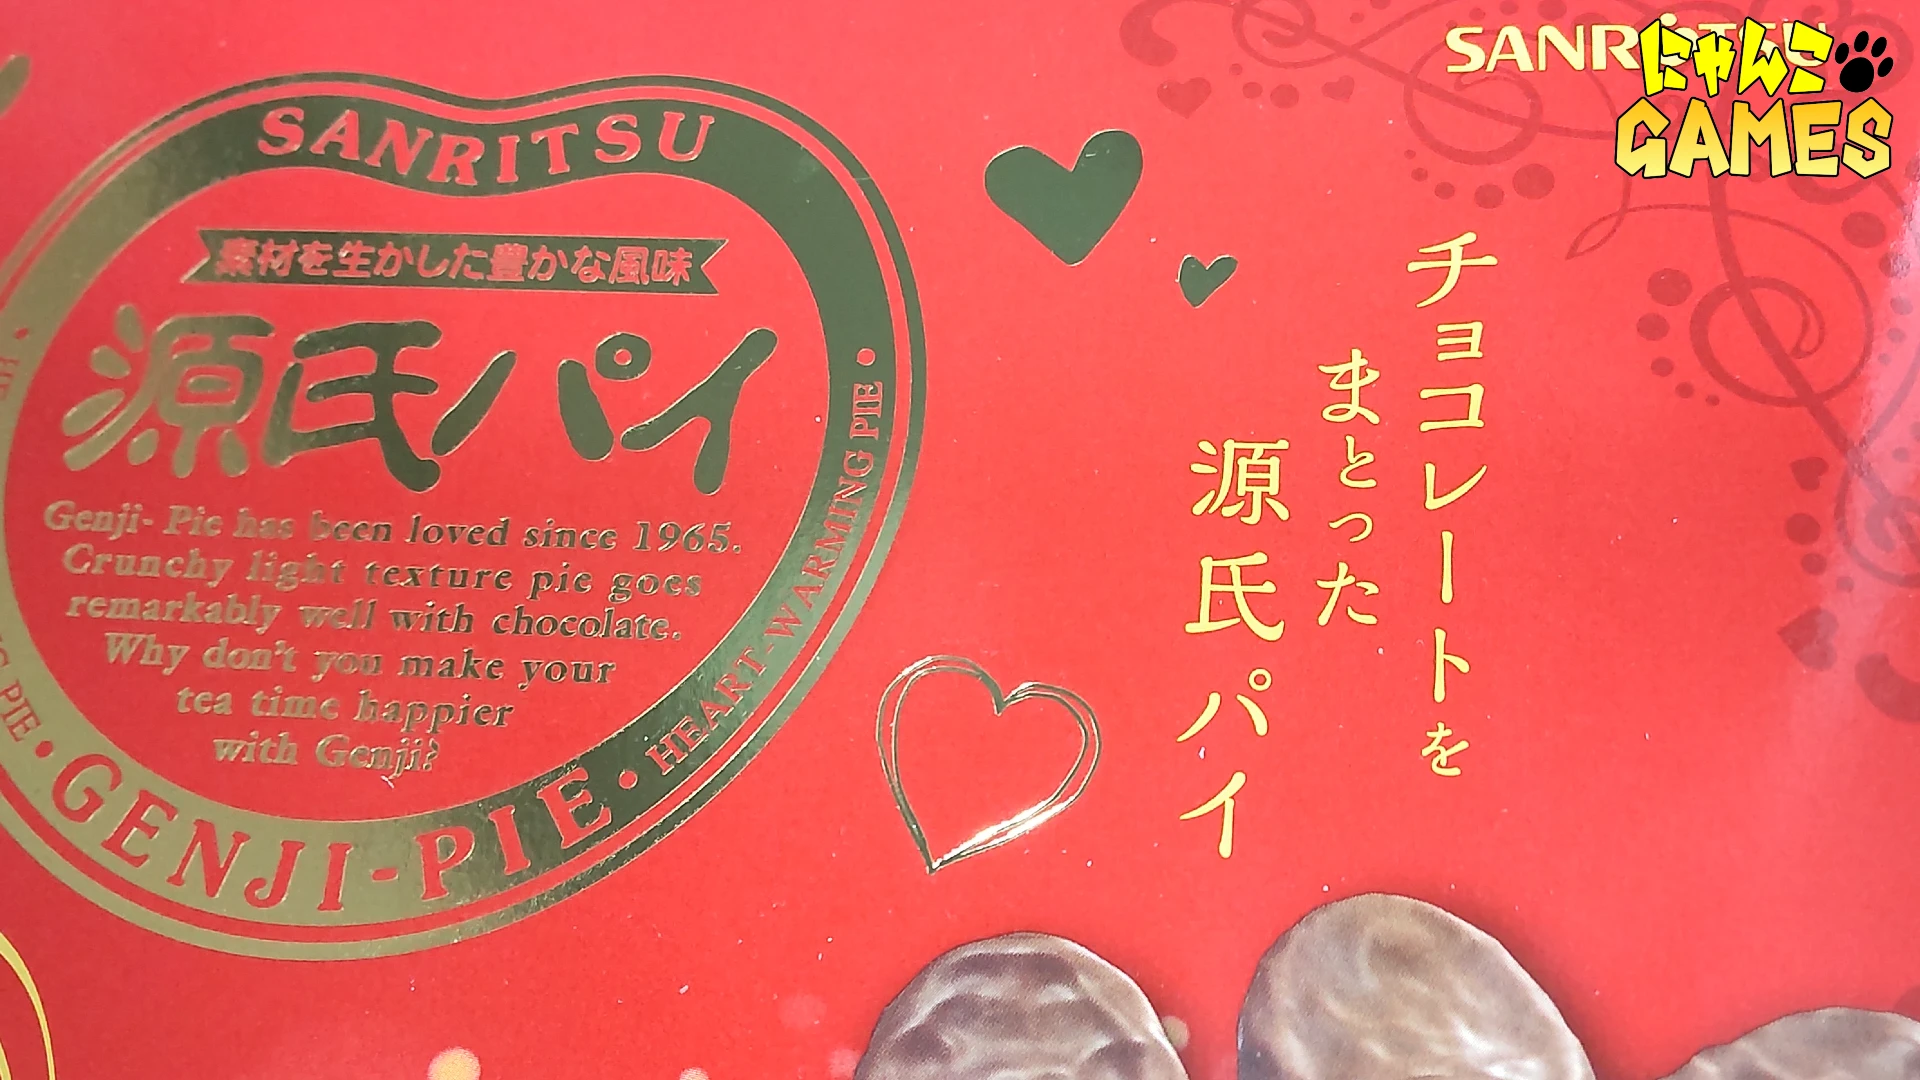 源氏パイチョコ包みバレンタイン BOX の文字